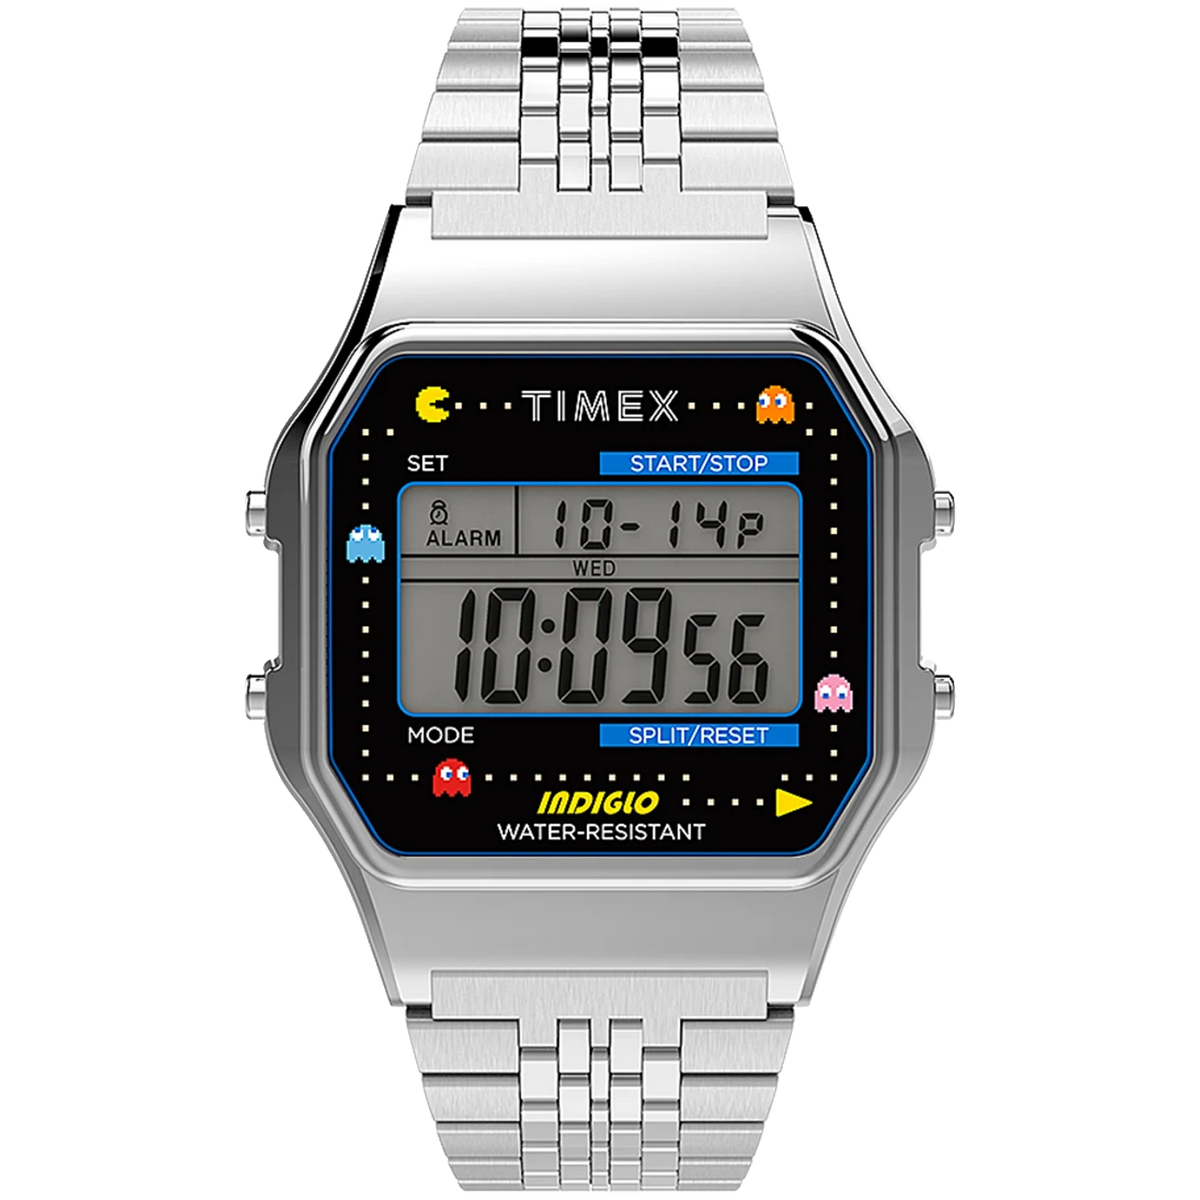 Timex T80 x Pac-Man 34mm - Silver